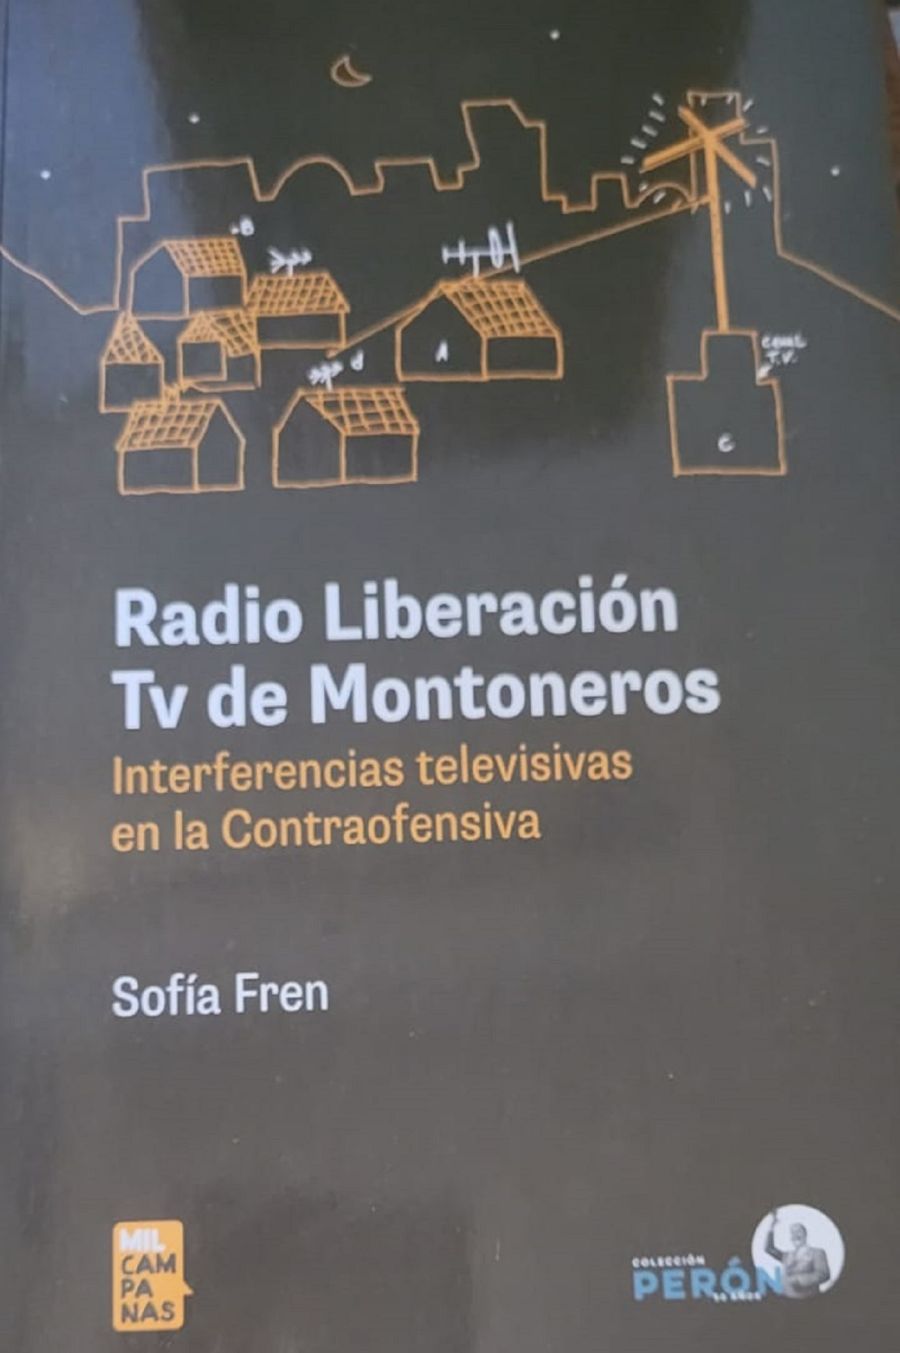 Radio Liberacion Tv de Montoneros